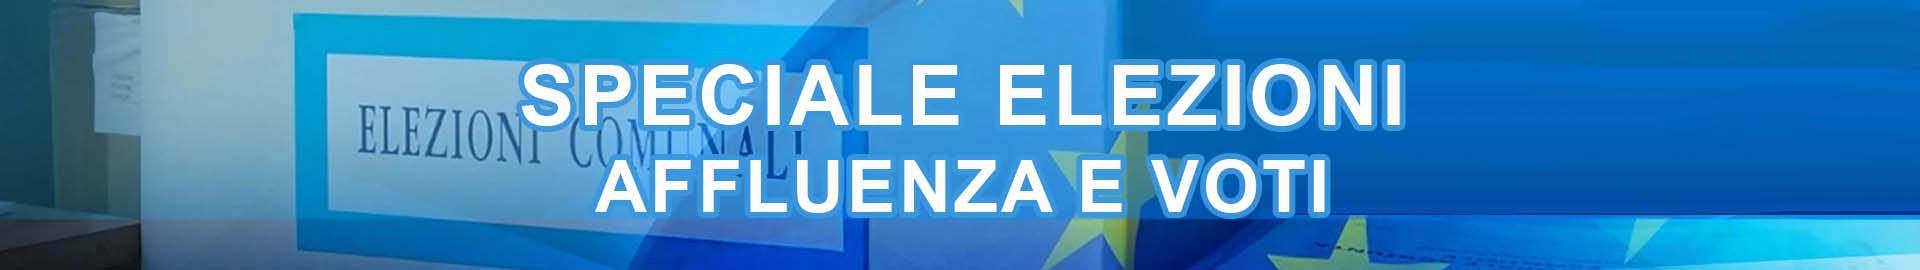 Tutte le informazioni sull’andamento del voto delle elezioni europee e del comune di Caltanissetta